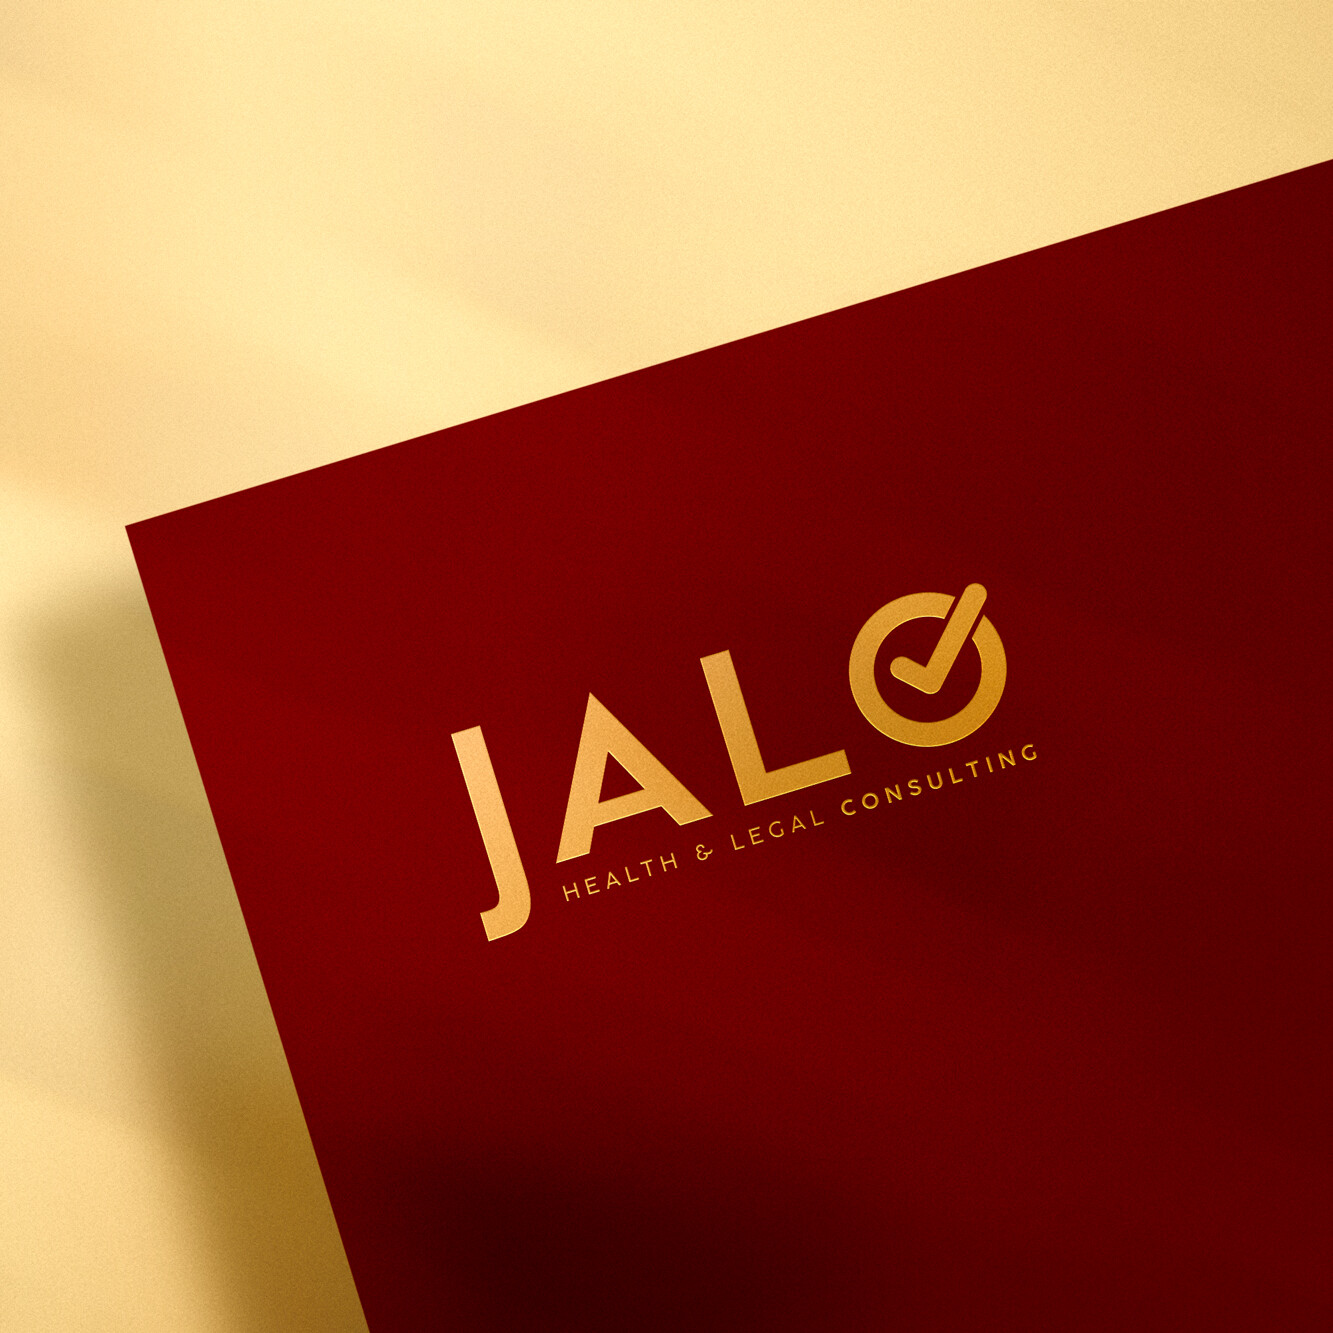 Logo - JALO Health & Legal Consulting - Diseño y Desarrollo de Branding por Pekub Studio